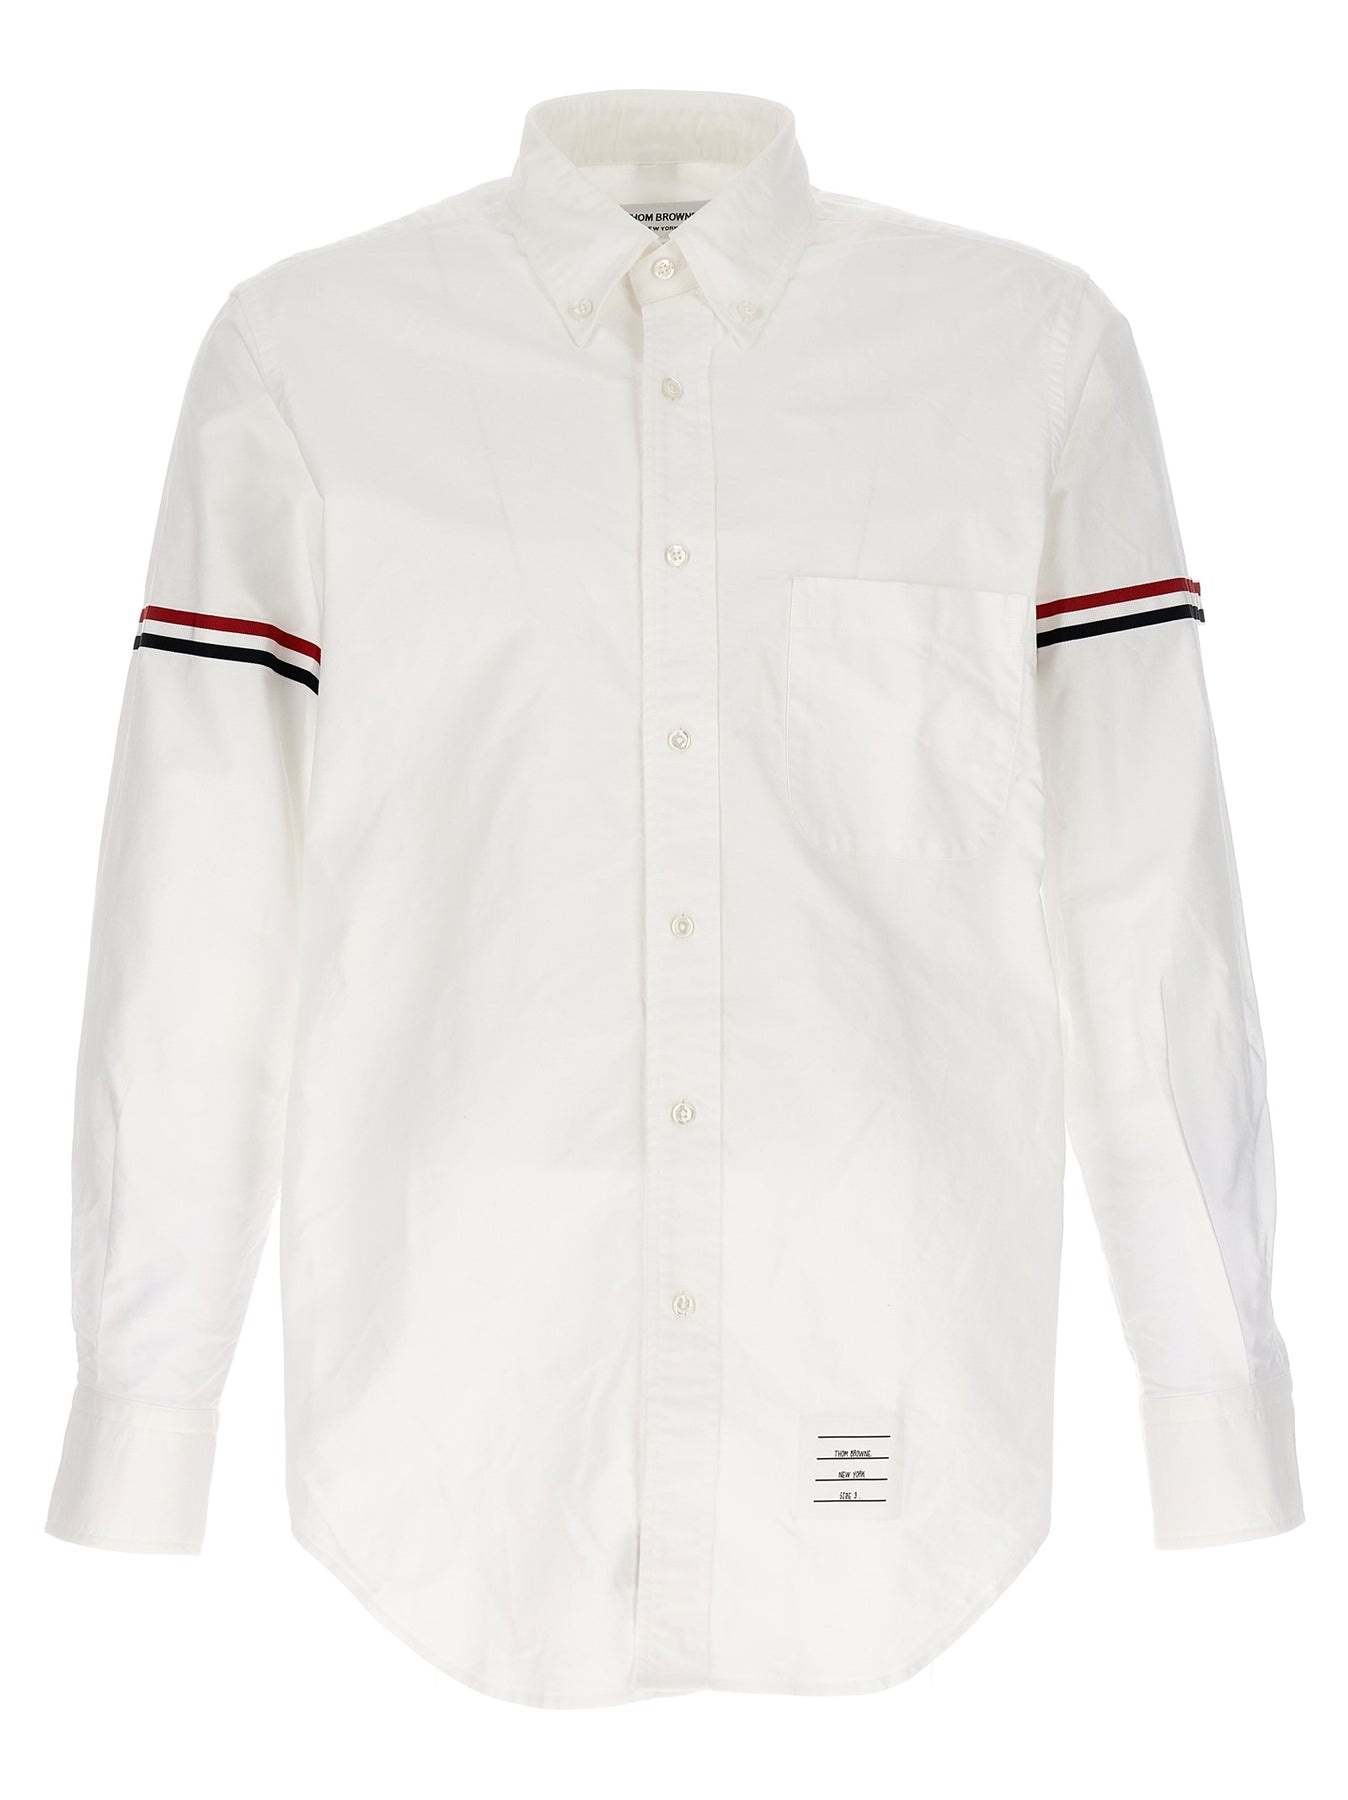 Rwb Shirt Shirt, Blouse White - 1